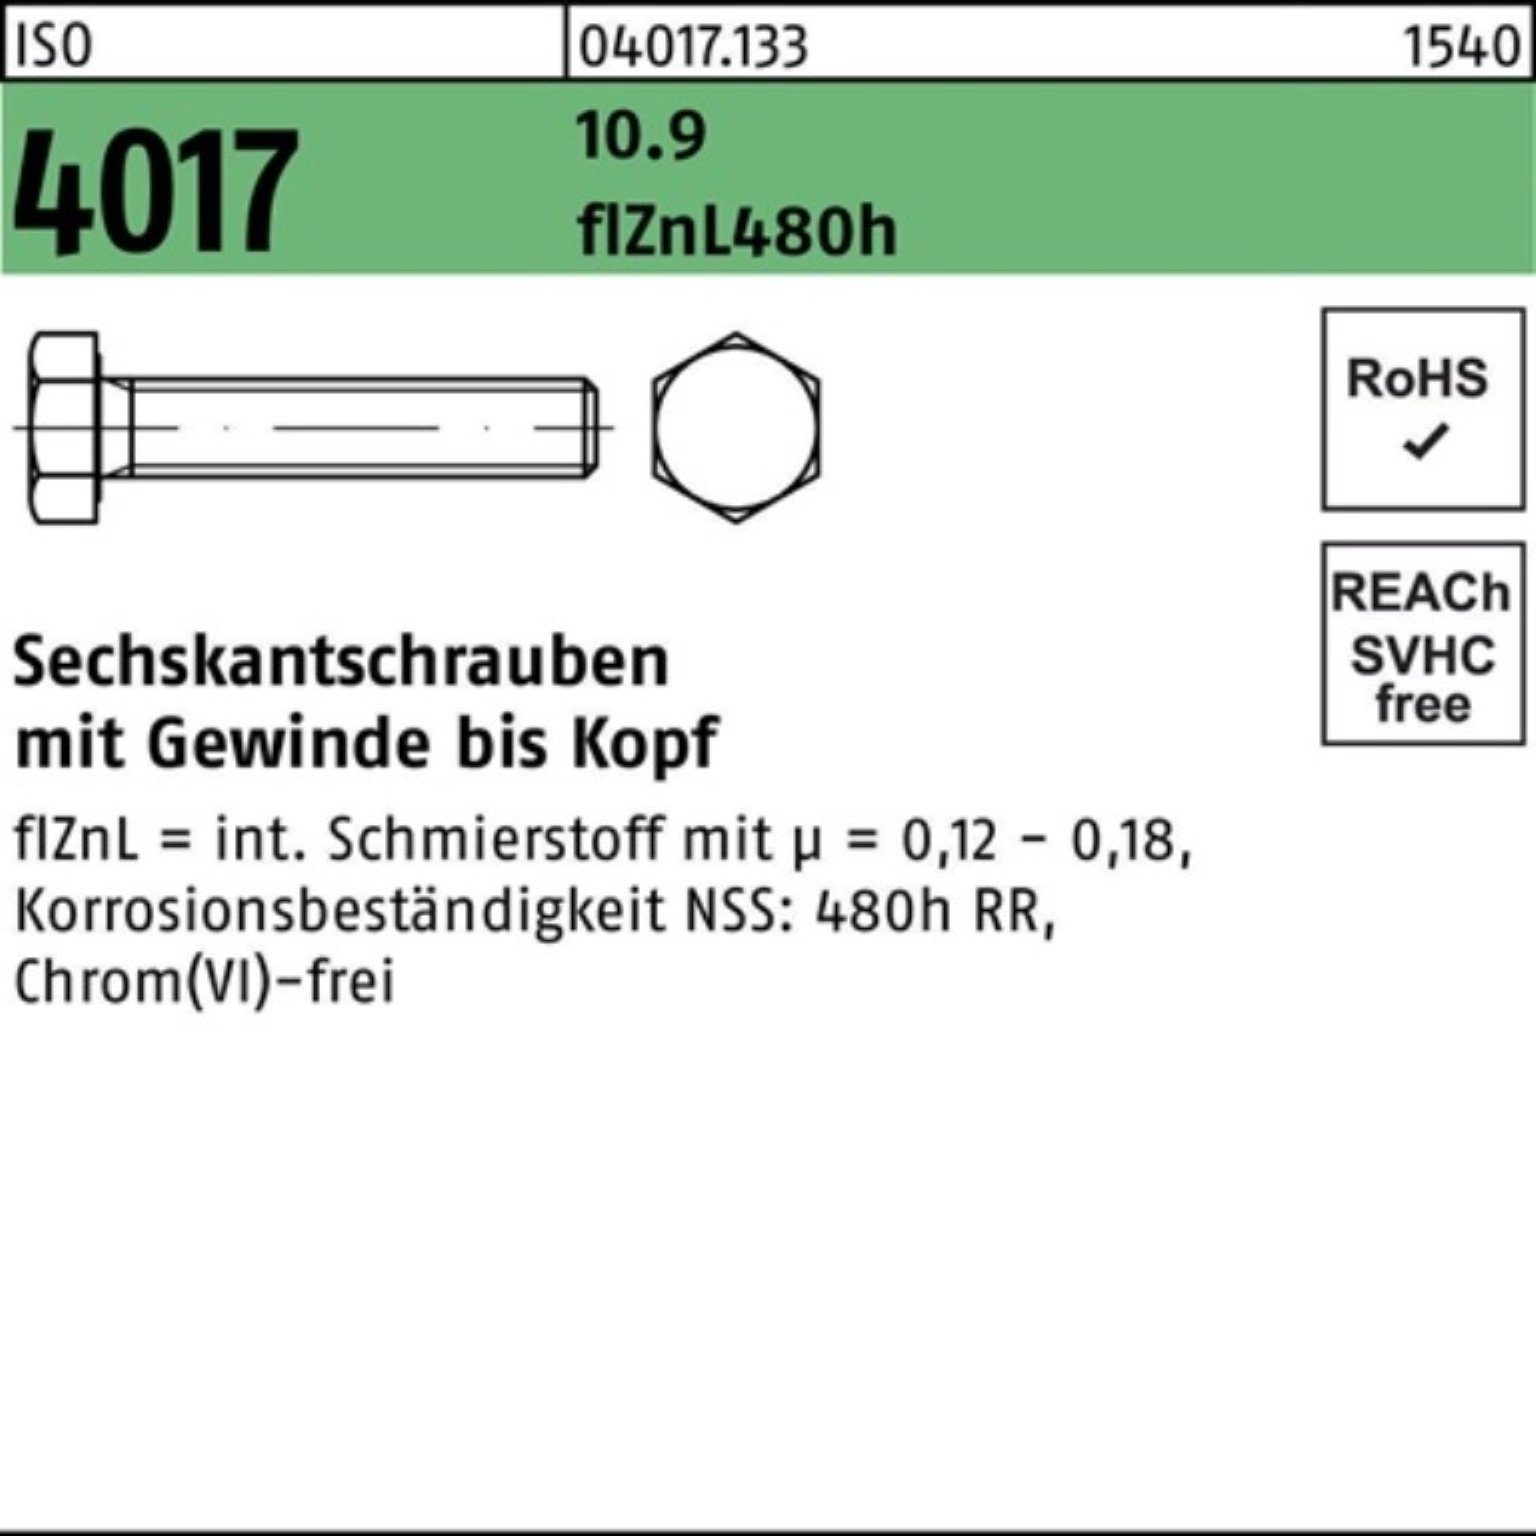 10.9 Pack Bufab 20 VG Sechskantschraube 4017 zinklamellenb. ISO Sechskantschraube 200er 70 M8x